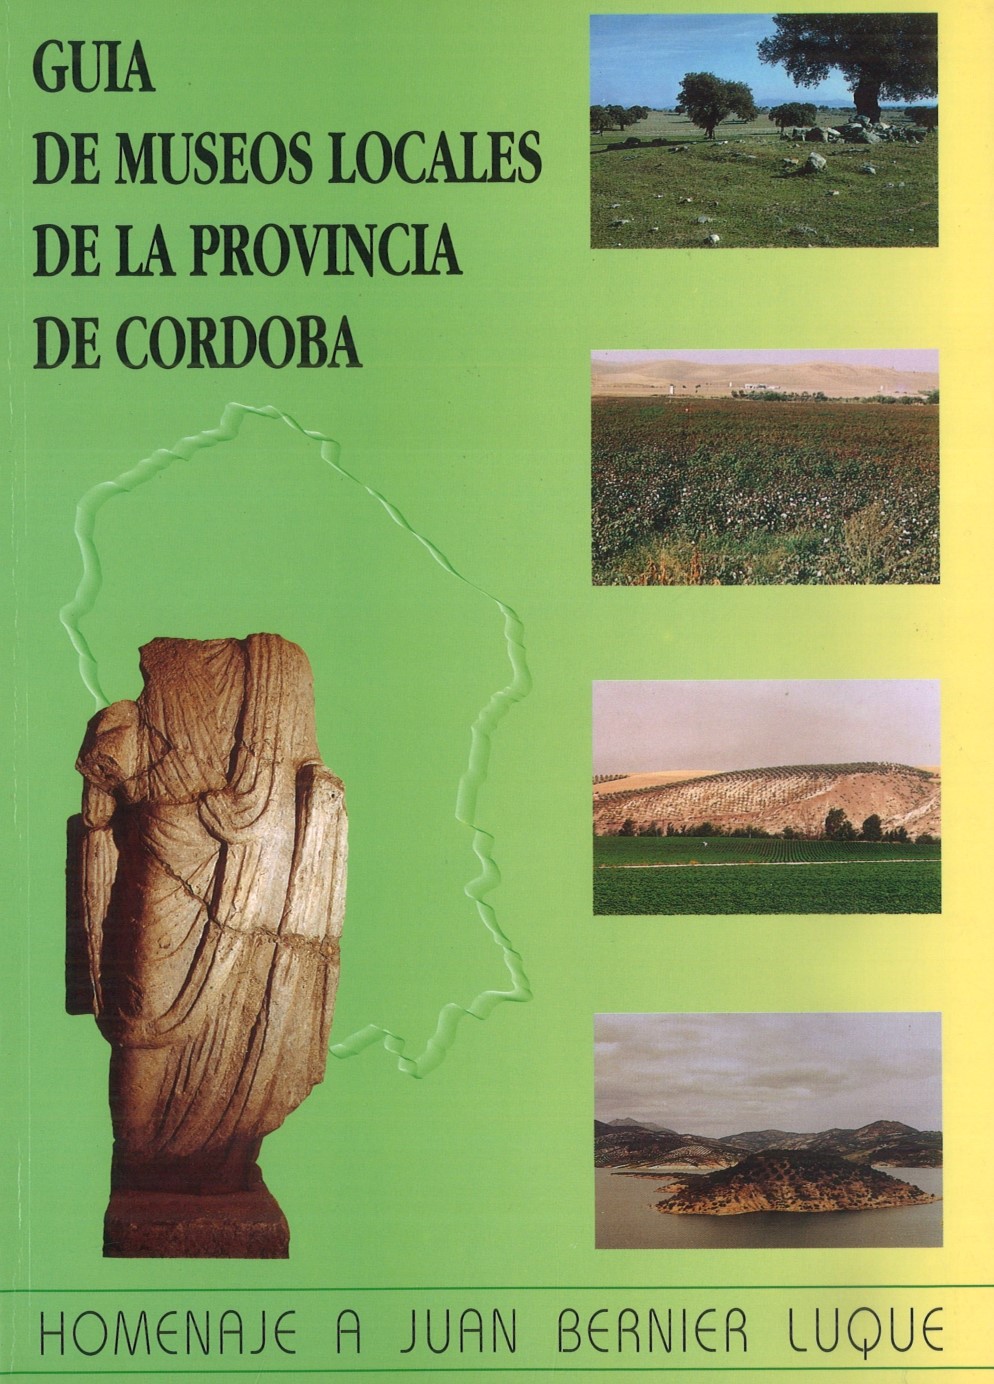 Imagen de portada del libro Guía de museos locales de la provincia de Córdoba